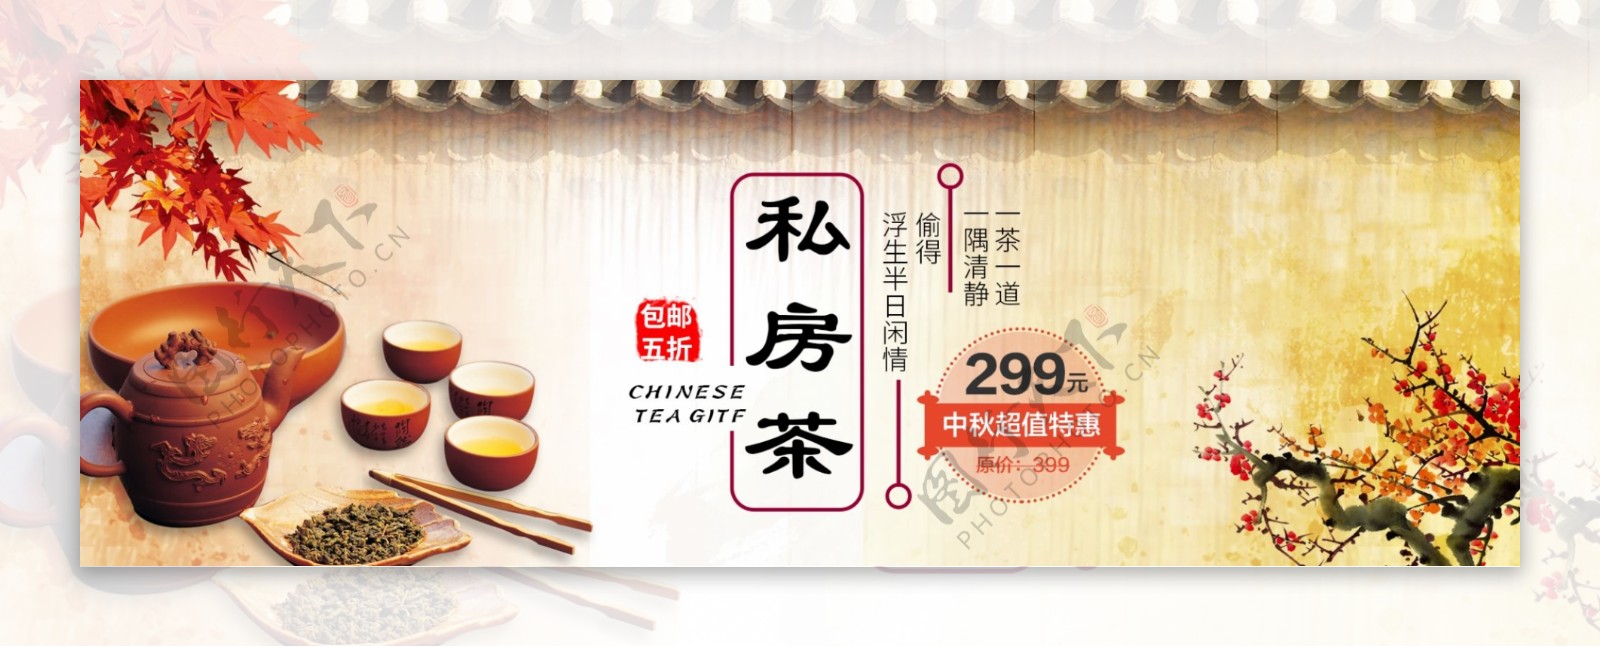 淡黄色中国风私房茶促销淘宝电商天猫海报